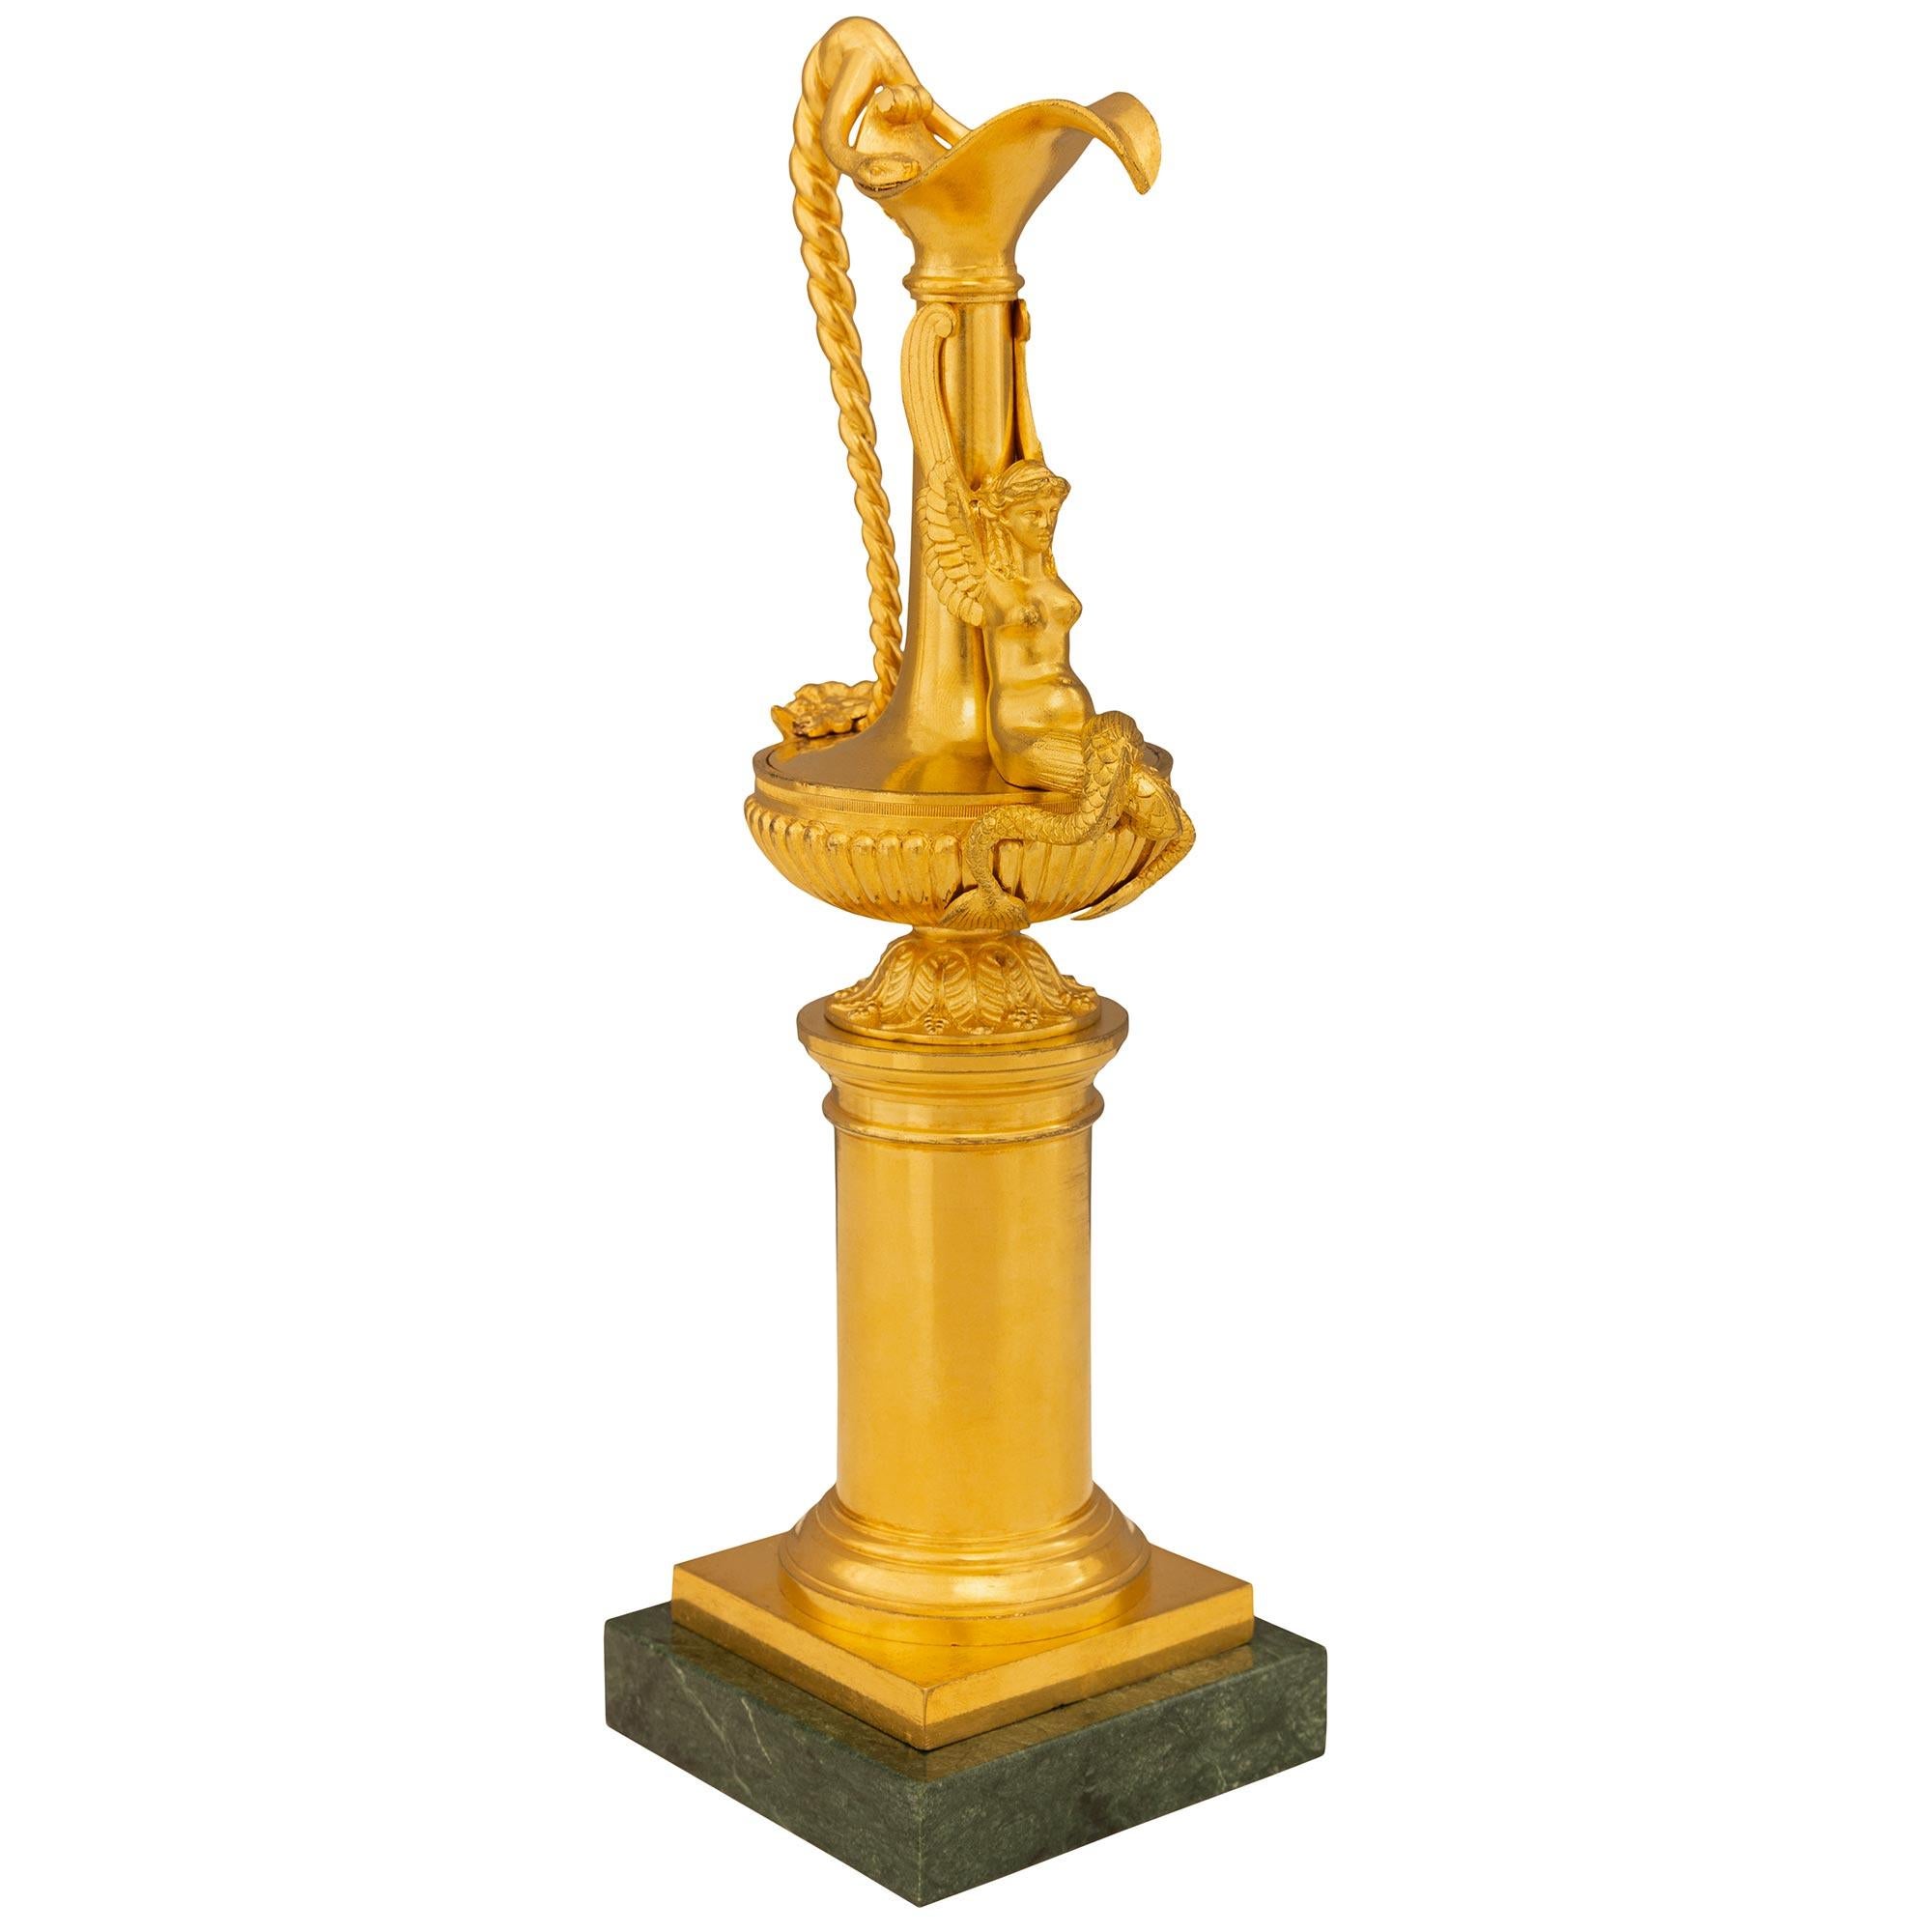 Paire d'aiguières très décoratives en bronze doré et marbre Verde Indio de style Louis XVI du XIXe siècle. Chaque aiguière de petite taille est surmontée d'une base carrée en marbre Verde Indio, au-dessous d'une colonne centrale à l'élégant motif